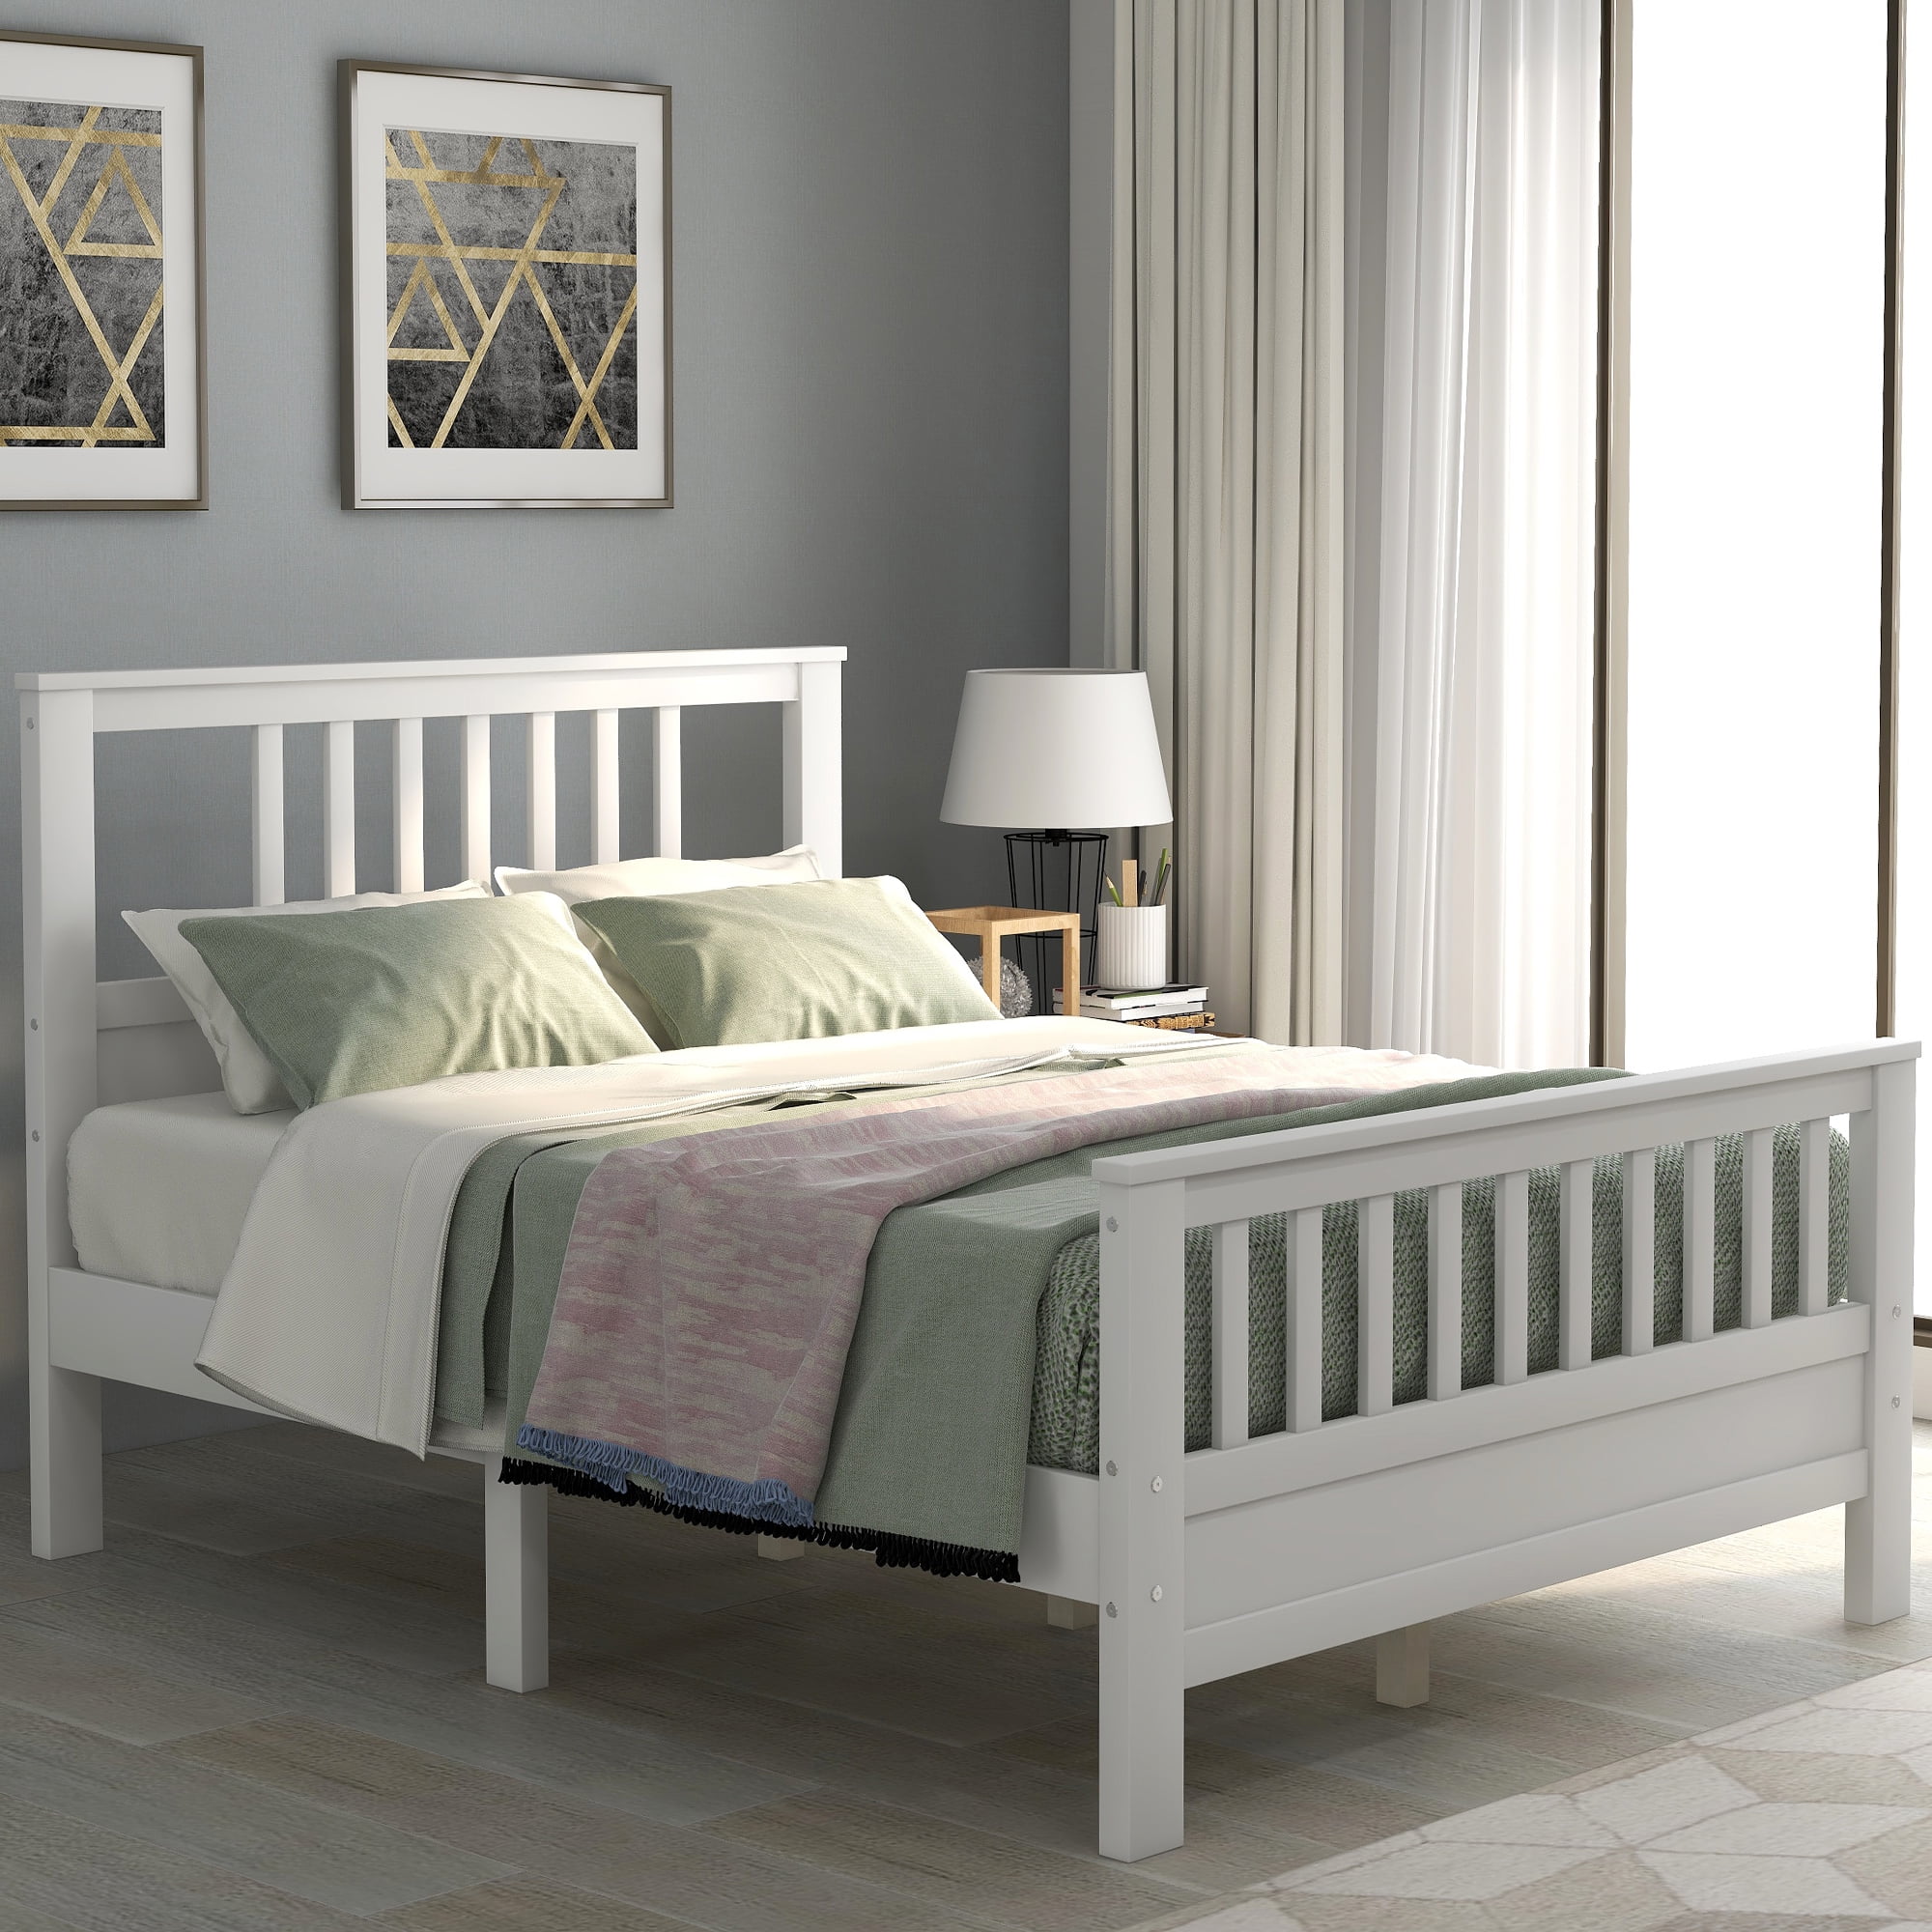 Full Bed Frame, White Full Platform Bed Frame with Headboard, Modern